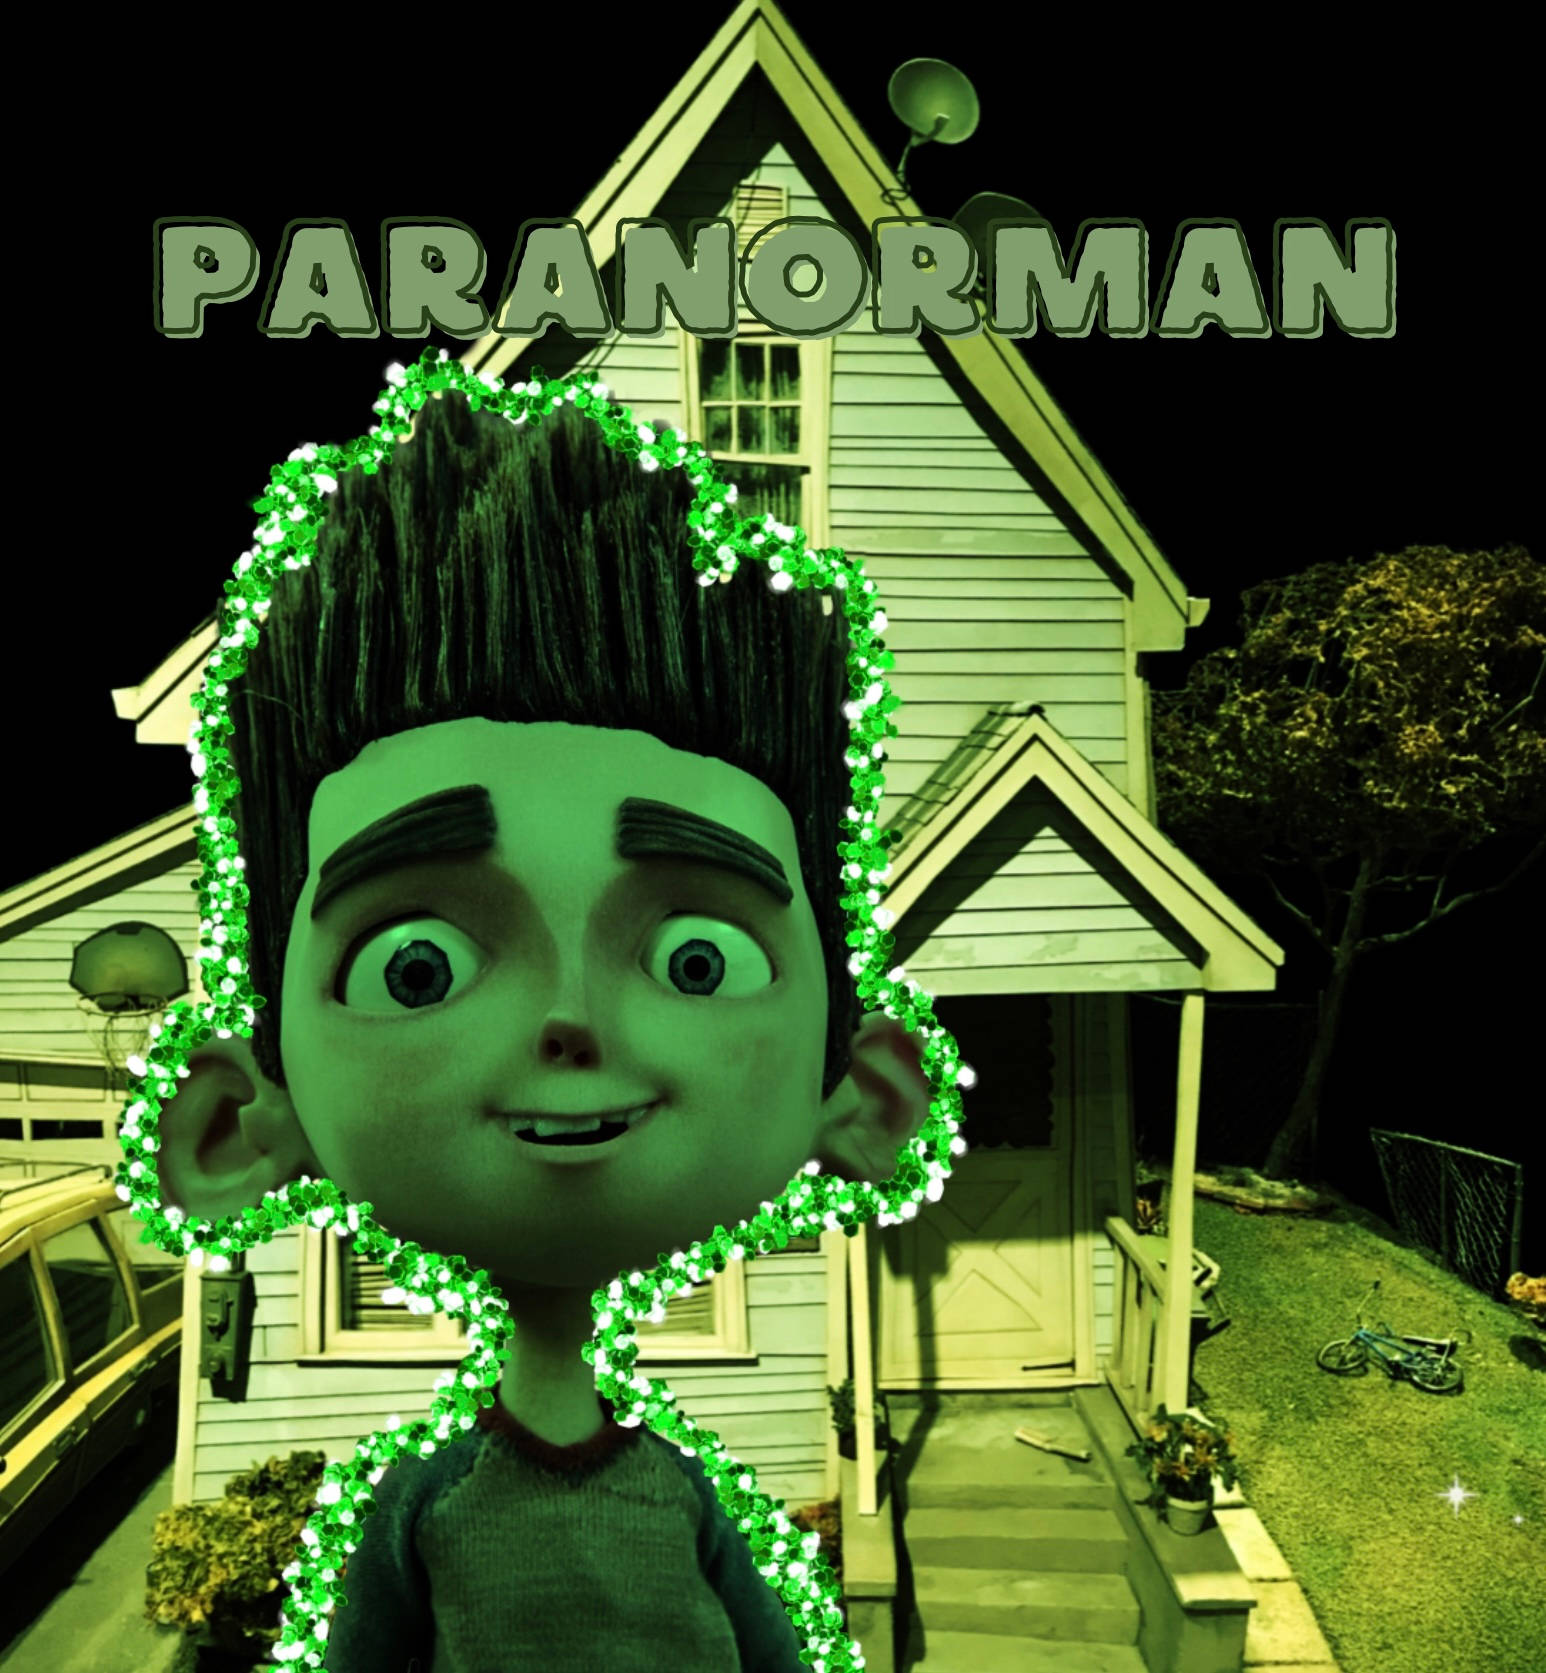 Grönaktiganorman I Paranorman. Wallpaper